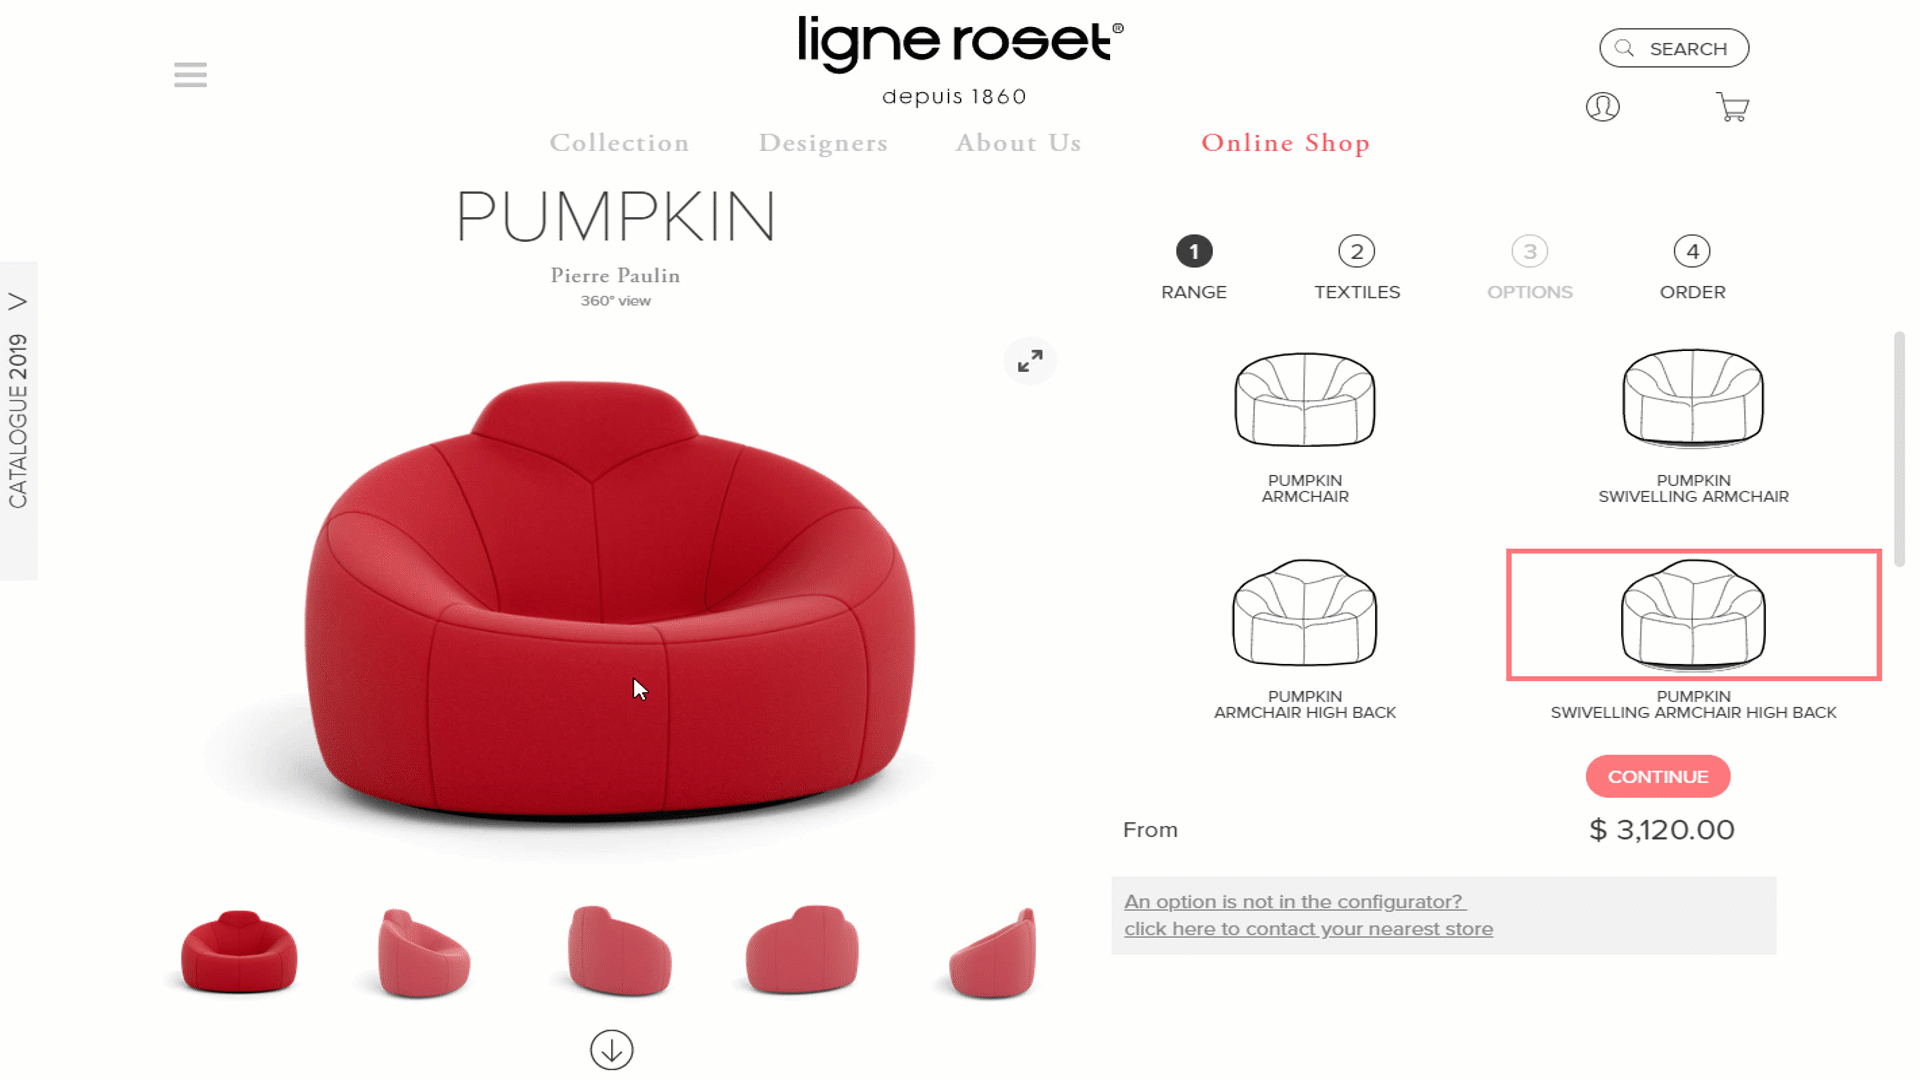 Ligne Roset has product customization by Cylindo